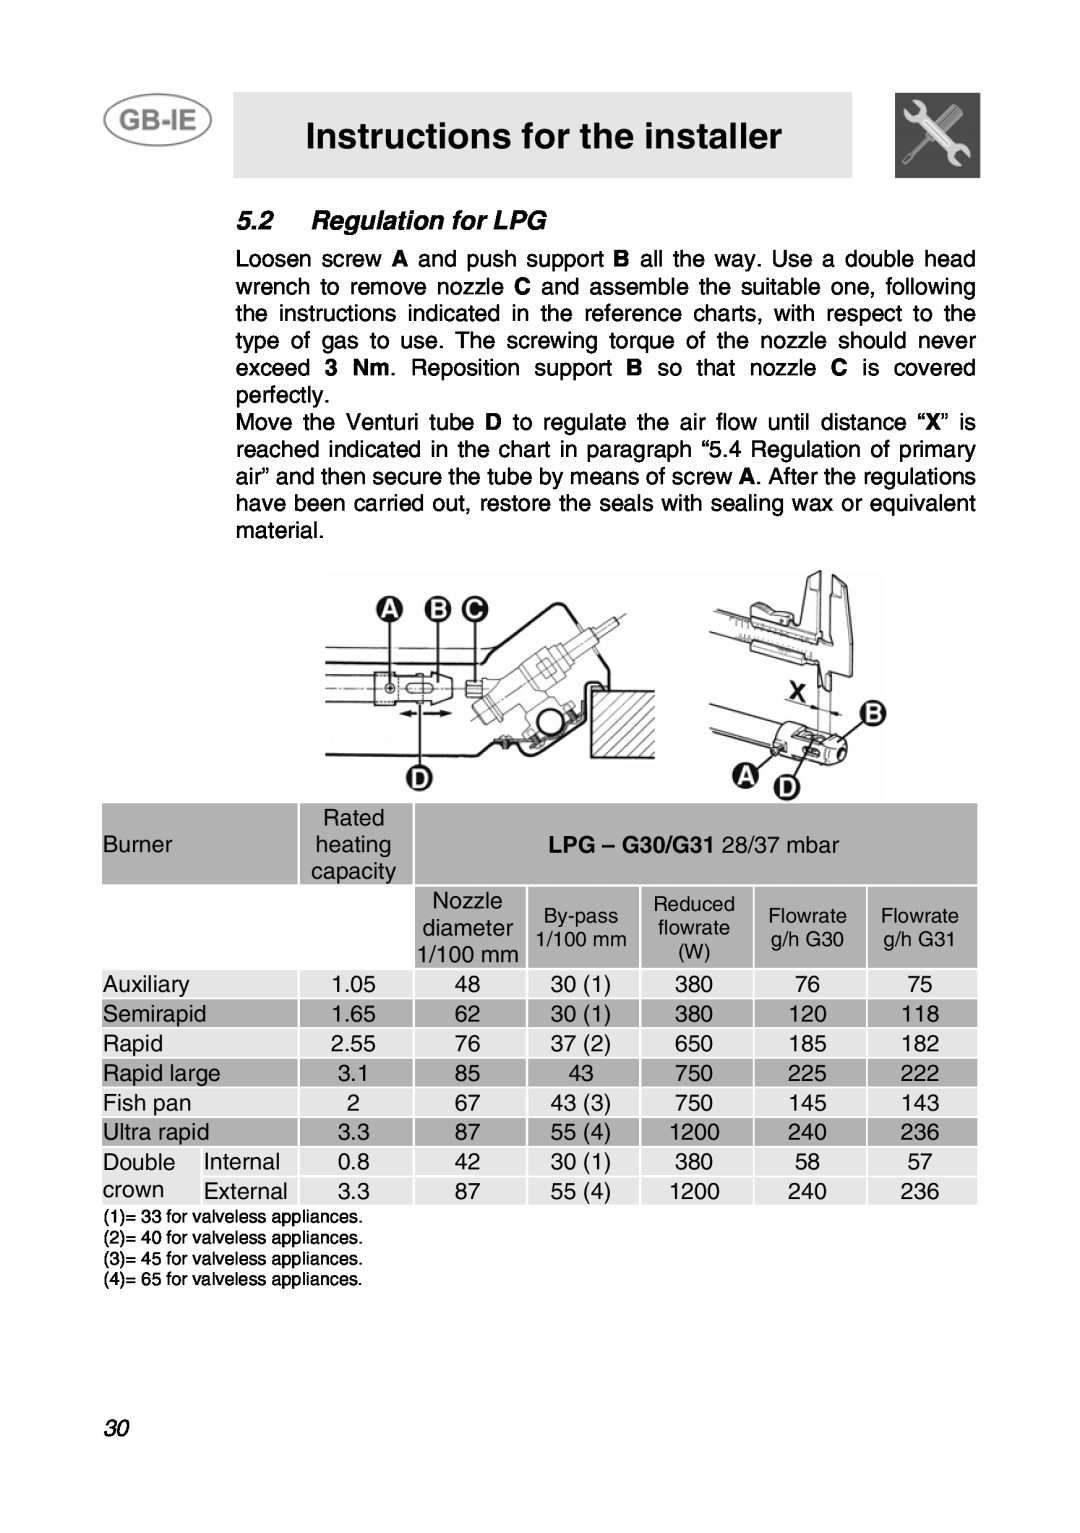 Smeg GCS70XG manual 5.2Regulation for LPG, LPG - G30/G31 28/37 mbar, Instructions for the installer 